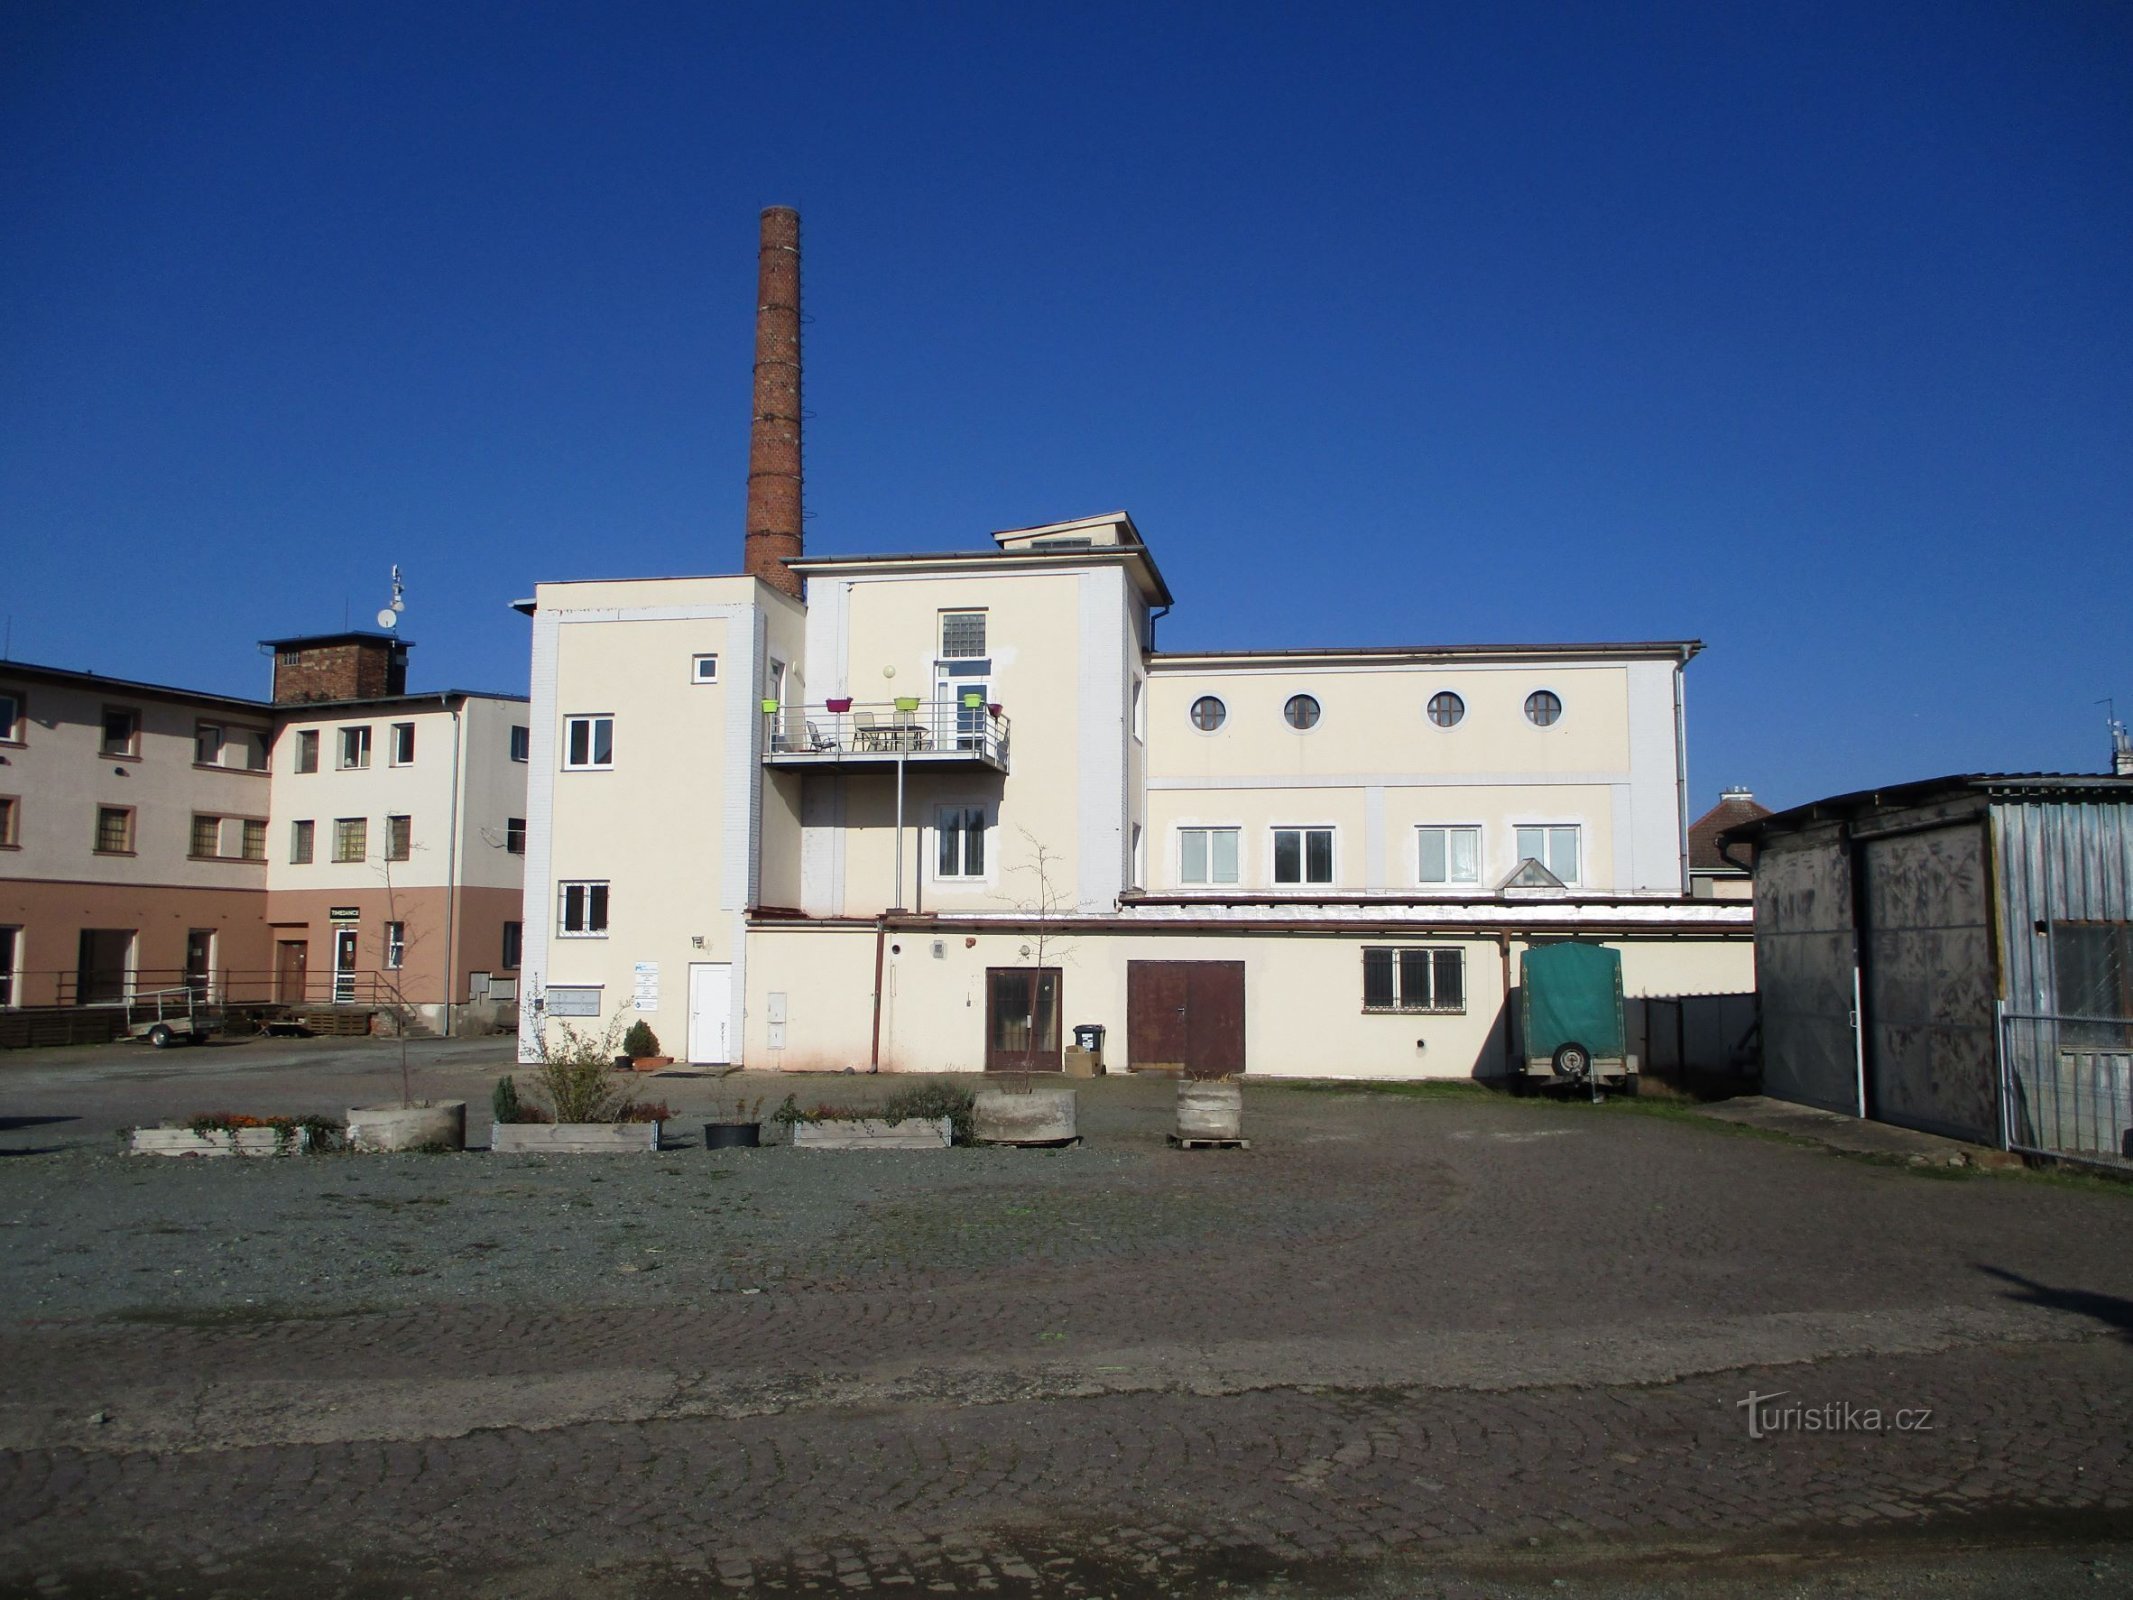 Окроулик, № 1630, бывшая кооперативная пекарня (Градец Кралове, 7.11.2020 ноября XNUMX г.)